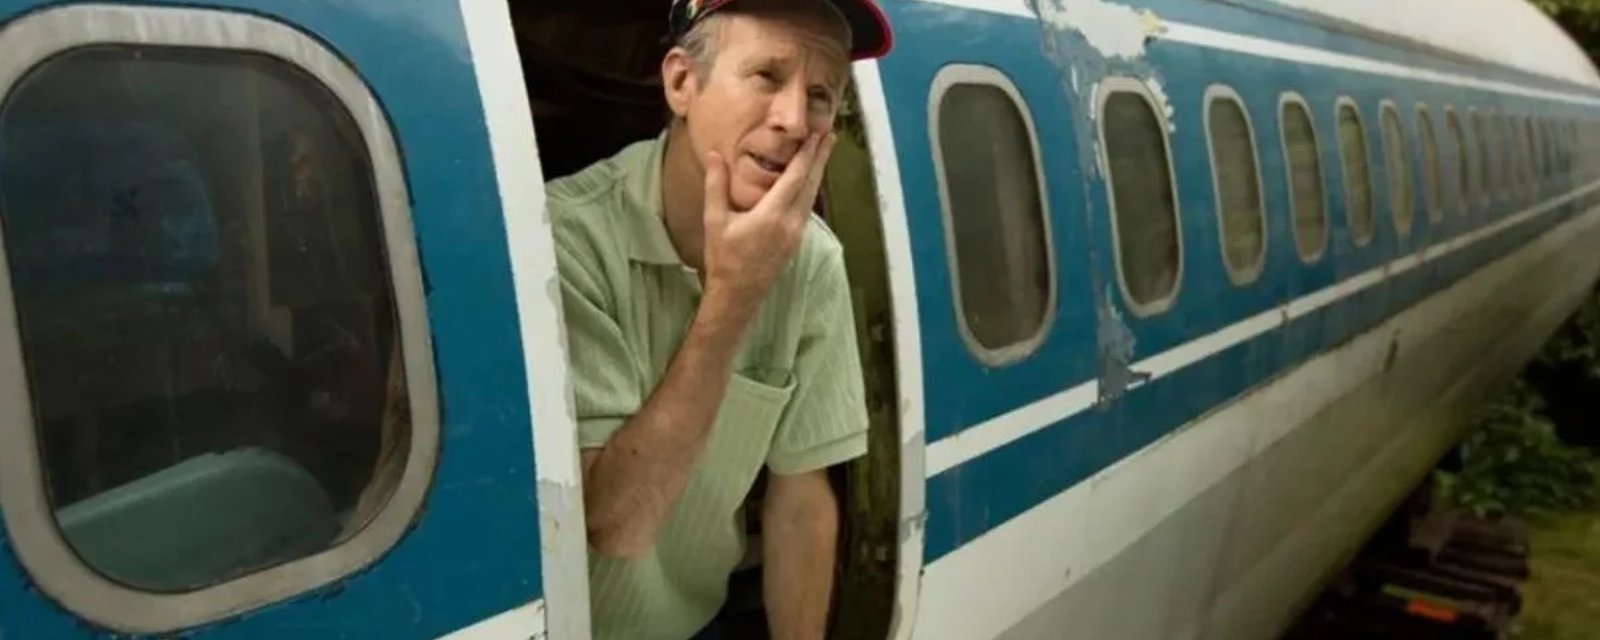 Cet homme paie environ 370 $ par mois pour vivre dans un avion de ligne cloué au sol dans les bois